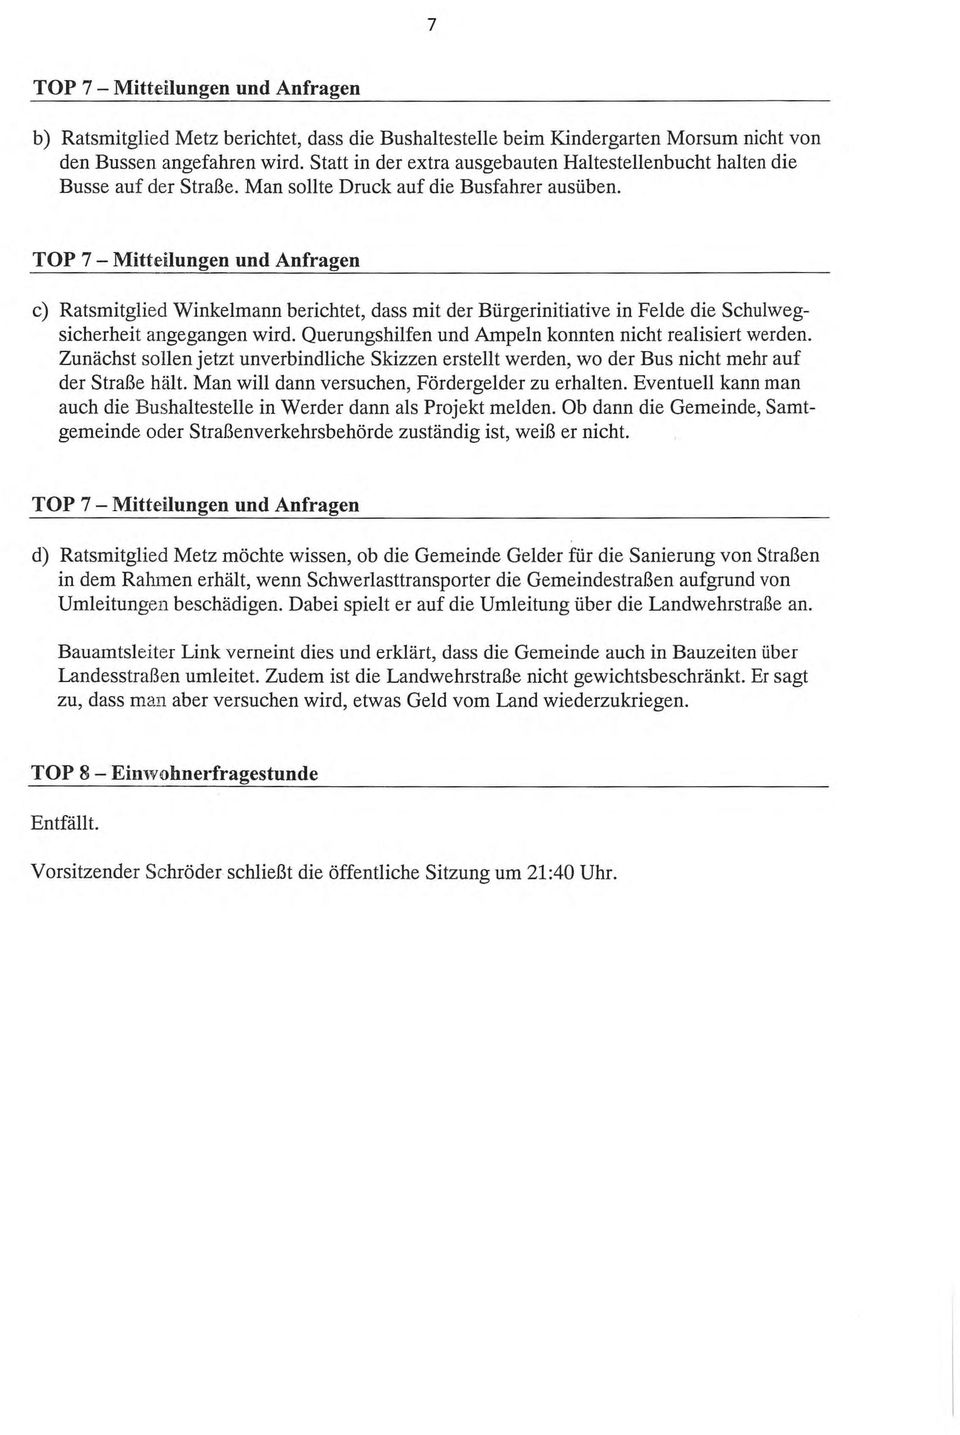 TOP 7 Mitteilungen und Anfragen c) Ratsmitglied Winkelmann berichtet, dass mit der Bürgerinitiative in Felde die Schulwegsicherheit angegangen wird.